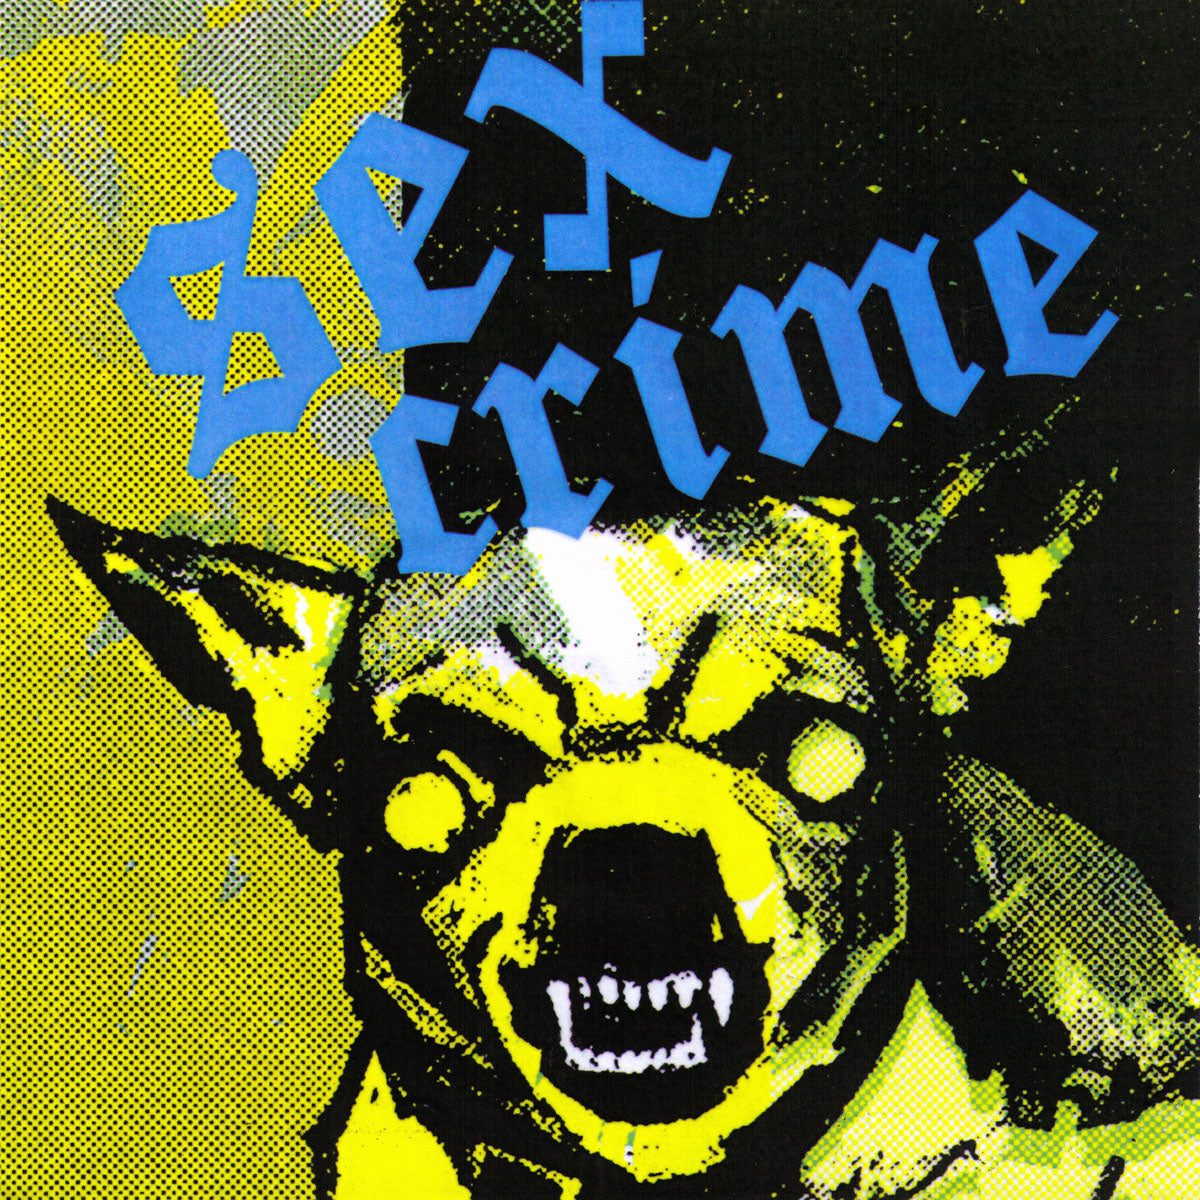 Sex Crime- S/T 7” ~RARE TRANSLUCENT ACETATE COVER LTD TO 100!